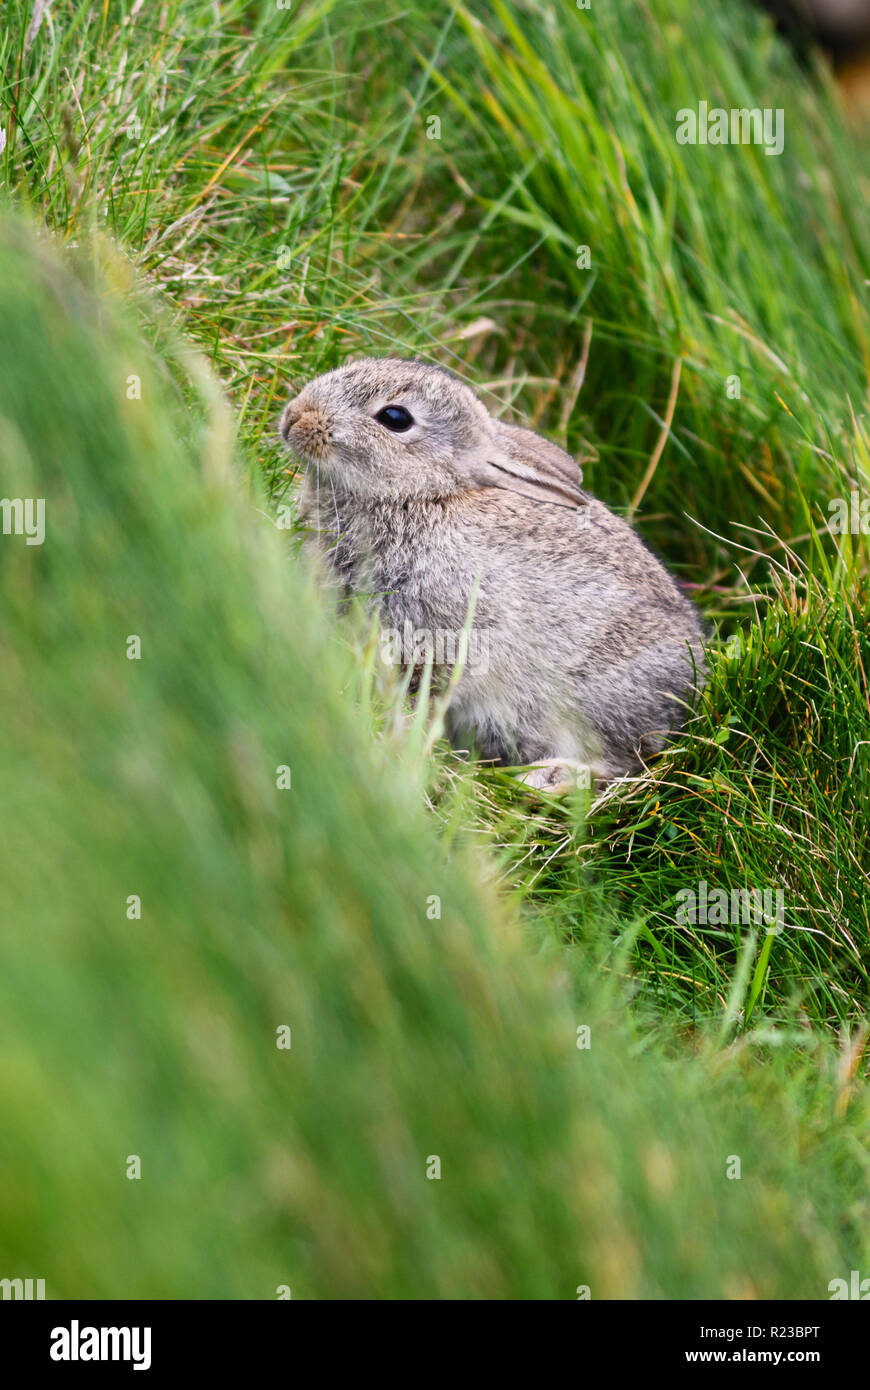 Europäische Kaninchen - Oryctolagus cuniculus, niedliche kleine Säugetier aus europäischen Wiesen und Weideland, Shetlandinseln, UK. Stockfoto